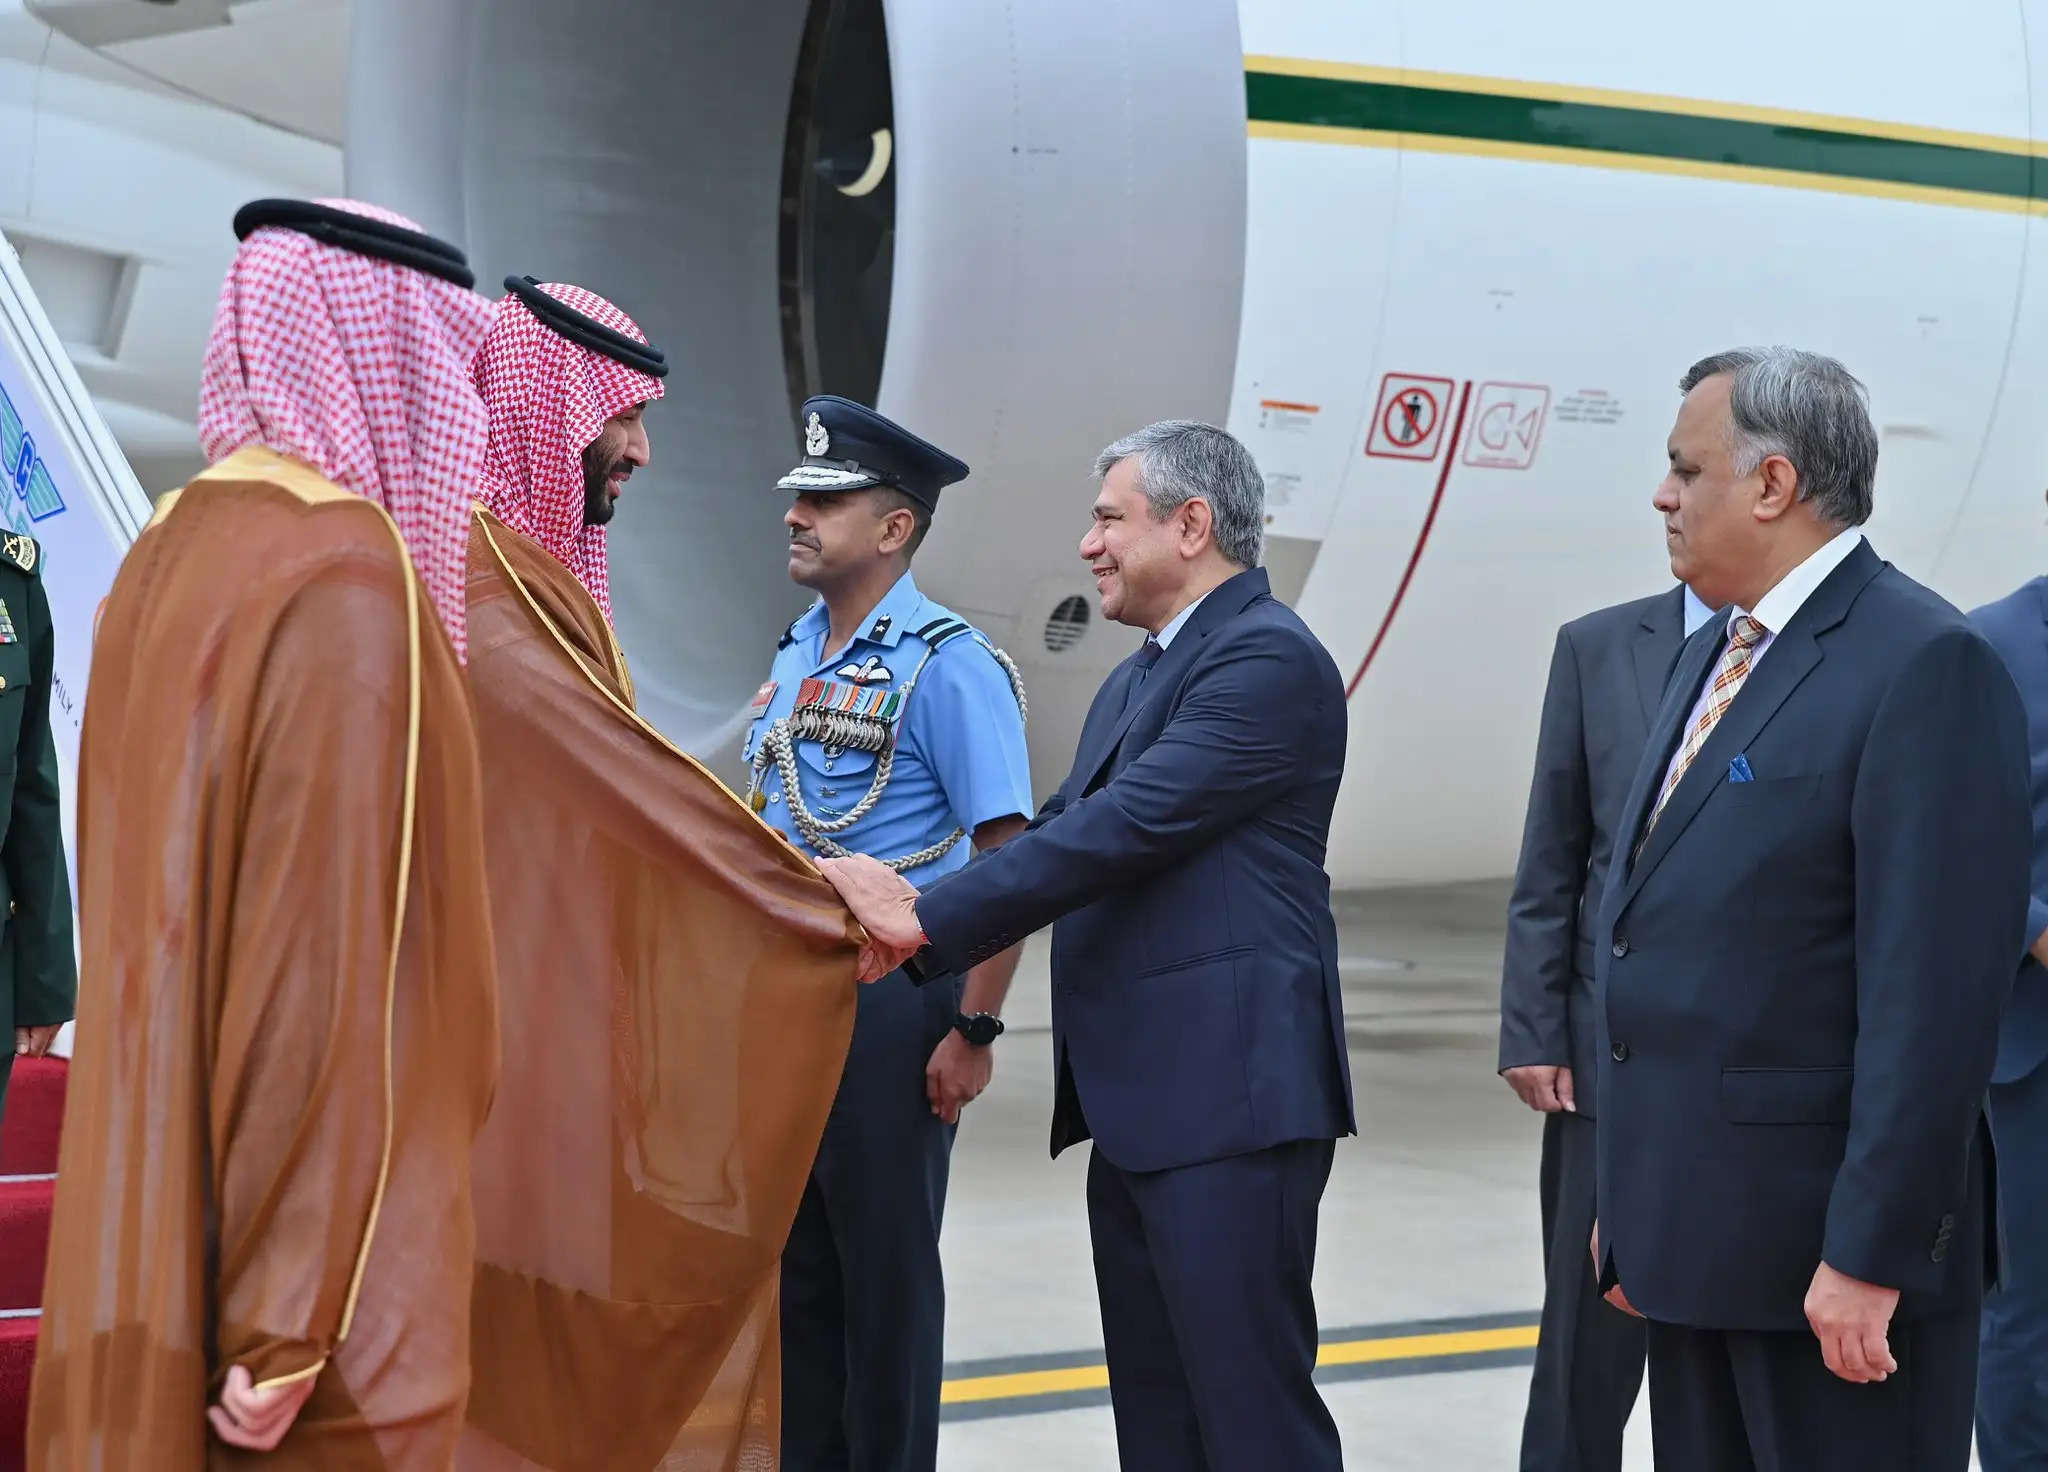 जी-20: सऊदी प्रिंस बिन सलमान और जर्मन चांसलर ओलाफ दिल्ली पहुंचे